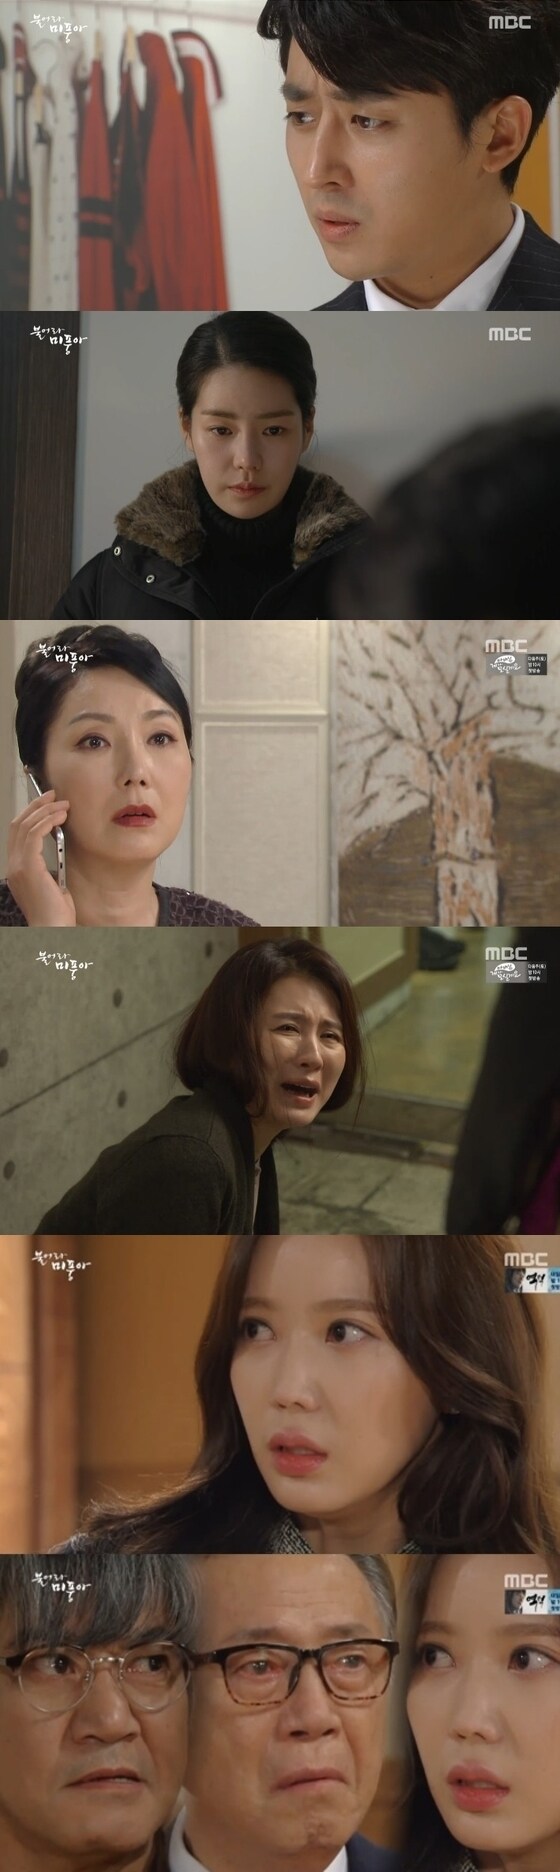 '불어라 미풍아'가 지난 26일 종영했다. © News1star / MBC '불어라 미풍아' 캡처